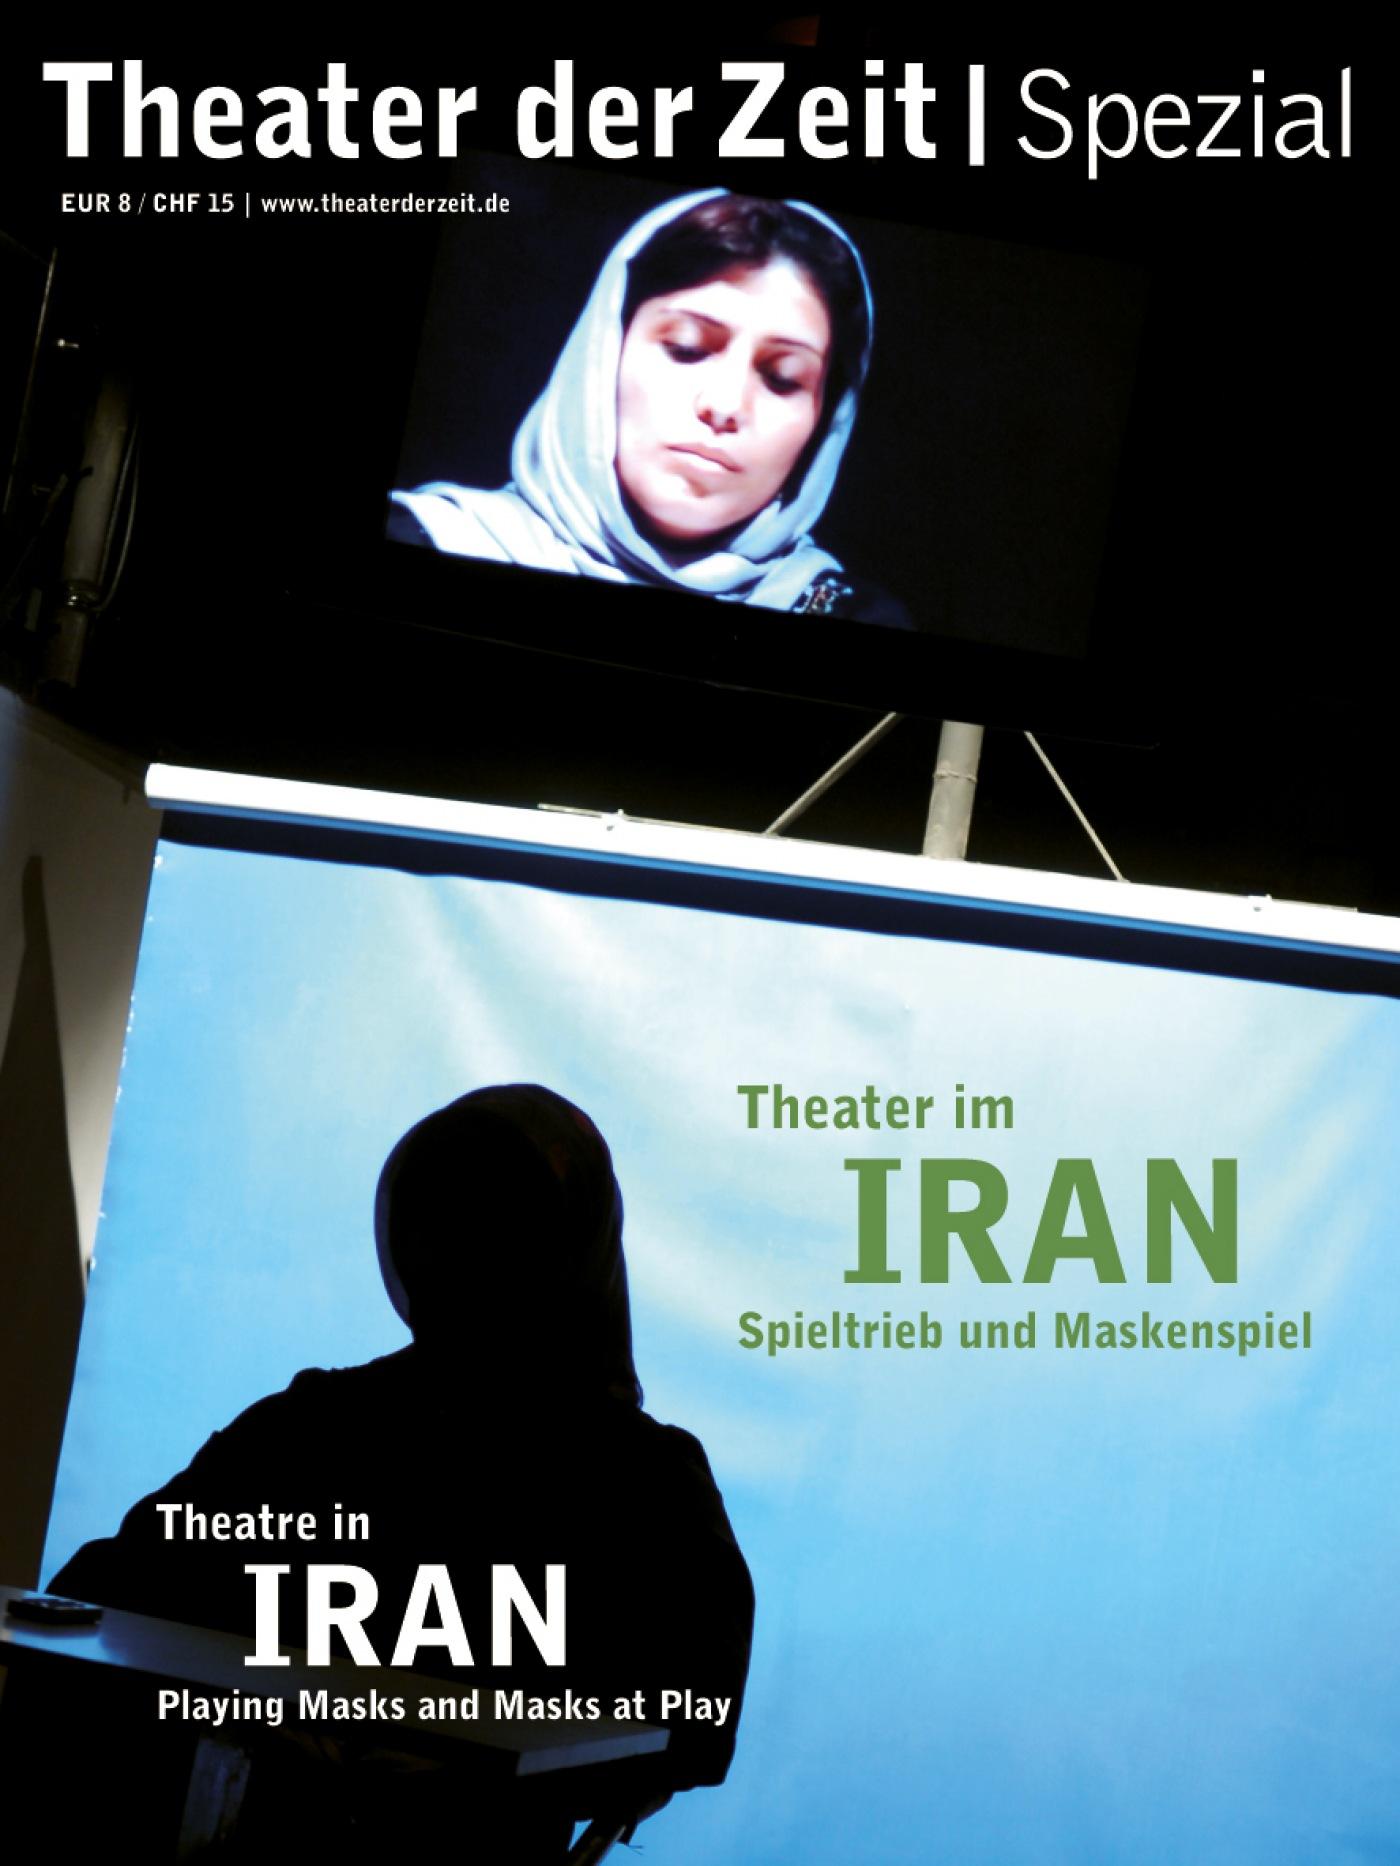 Theater der Zeit Spezial "Theater im Iran"